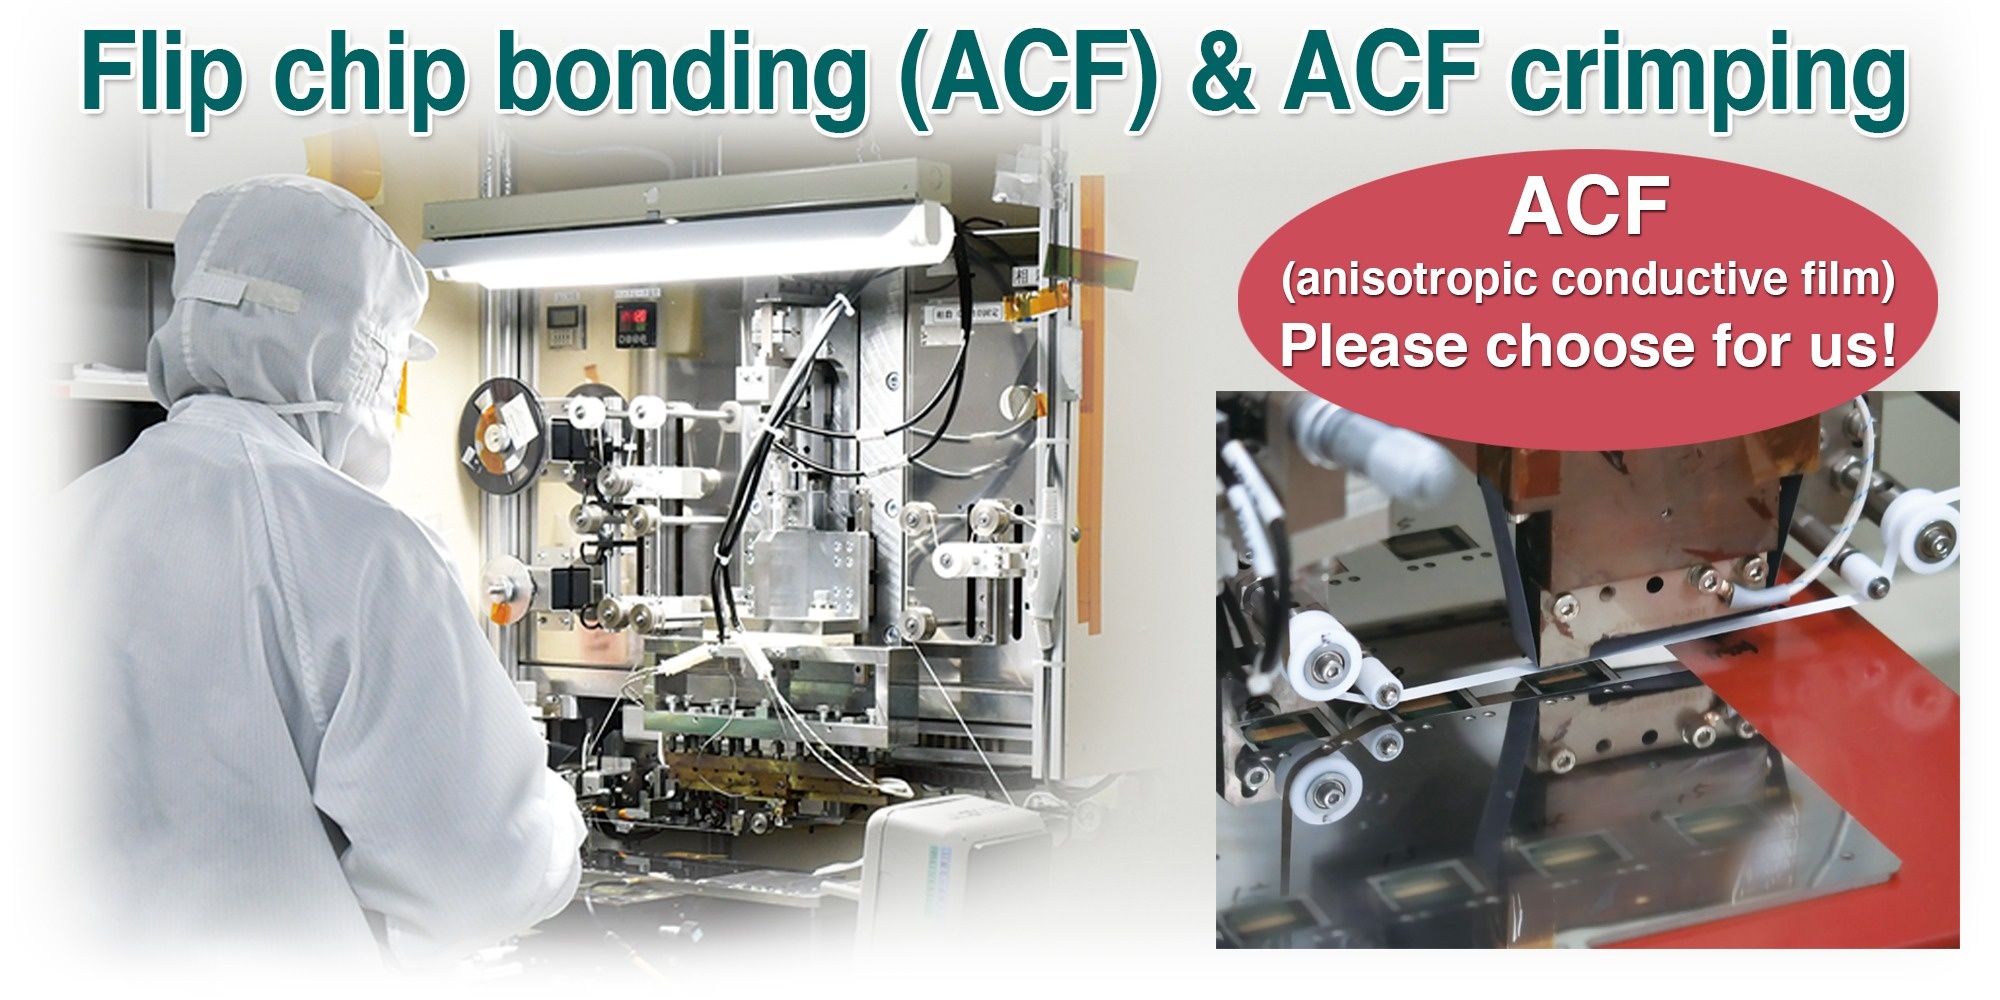 Flip chip bonding (ACF) & ACF crimping